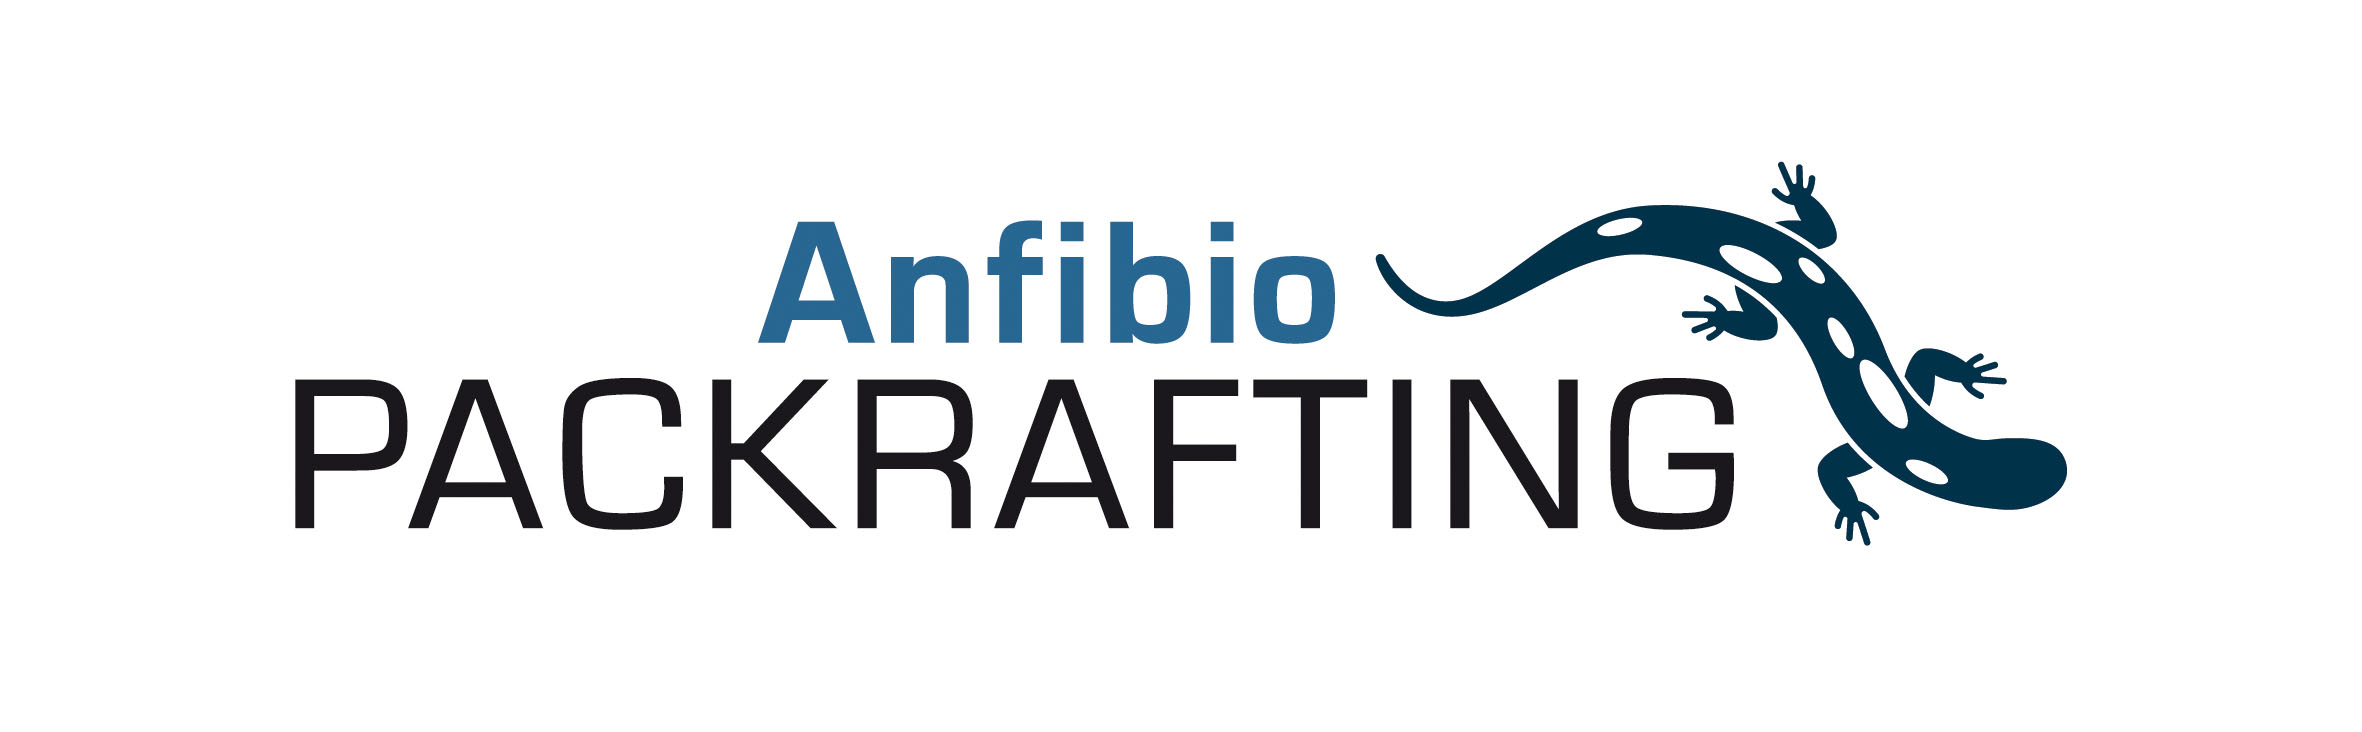 Logo Anfibio Packrafting